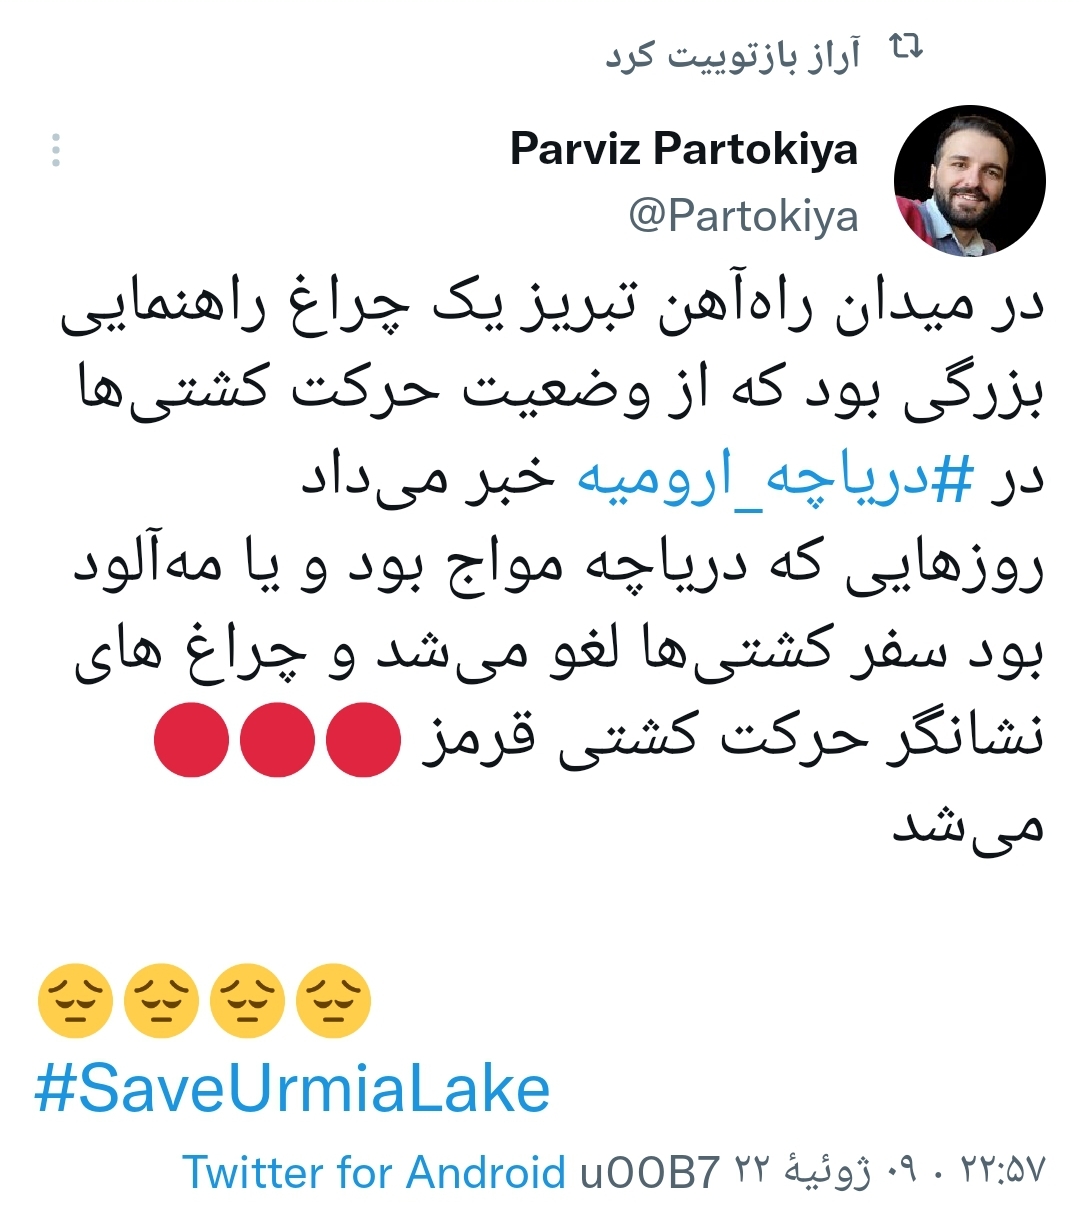 ‏عامل خشک شدن دریاچه ارومیه، خلاف ادعای پانترک‌ها محلی‌گرایی است: حفر ۹۰ هزار حلقه چاه غیرمجاز، در ح